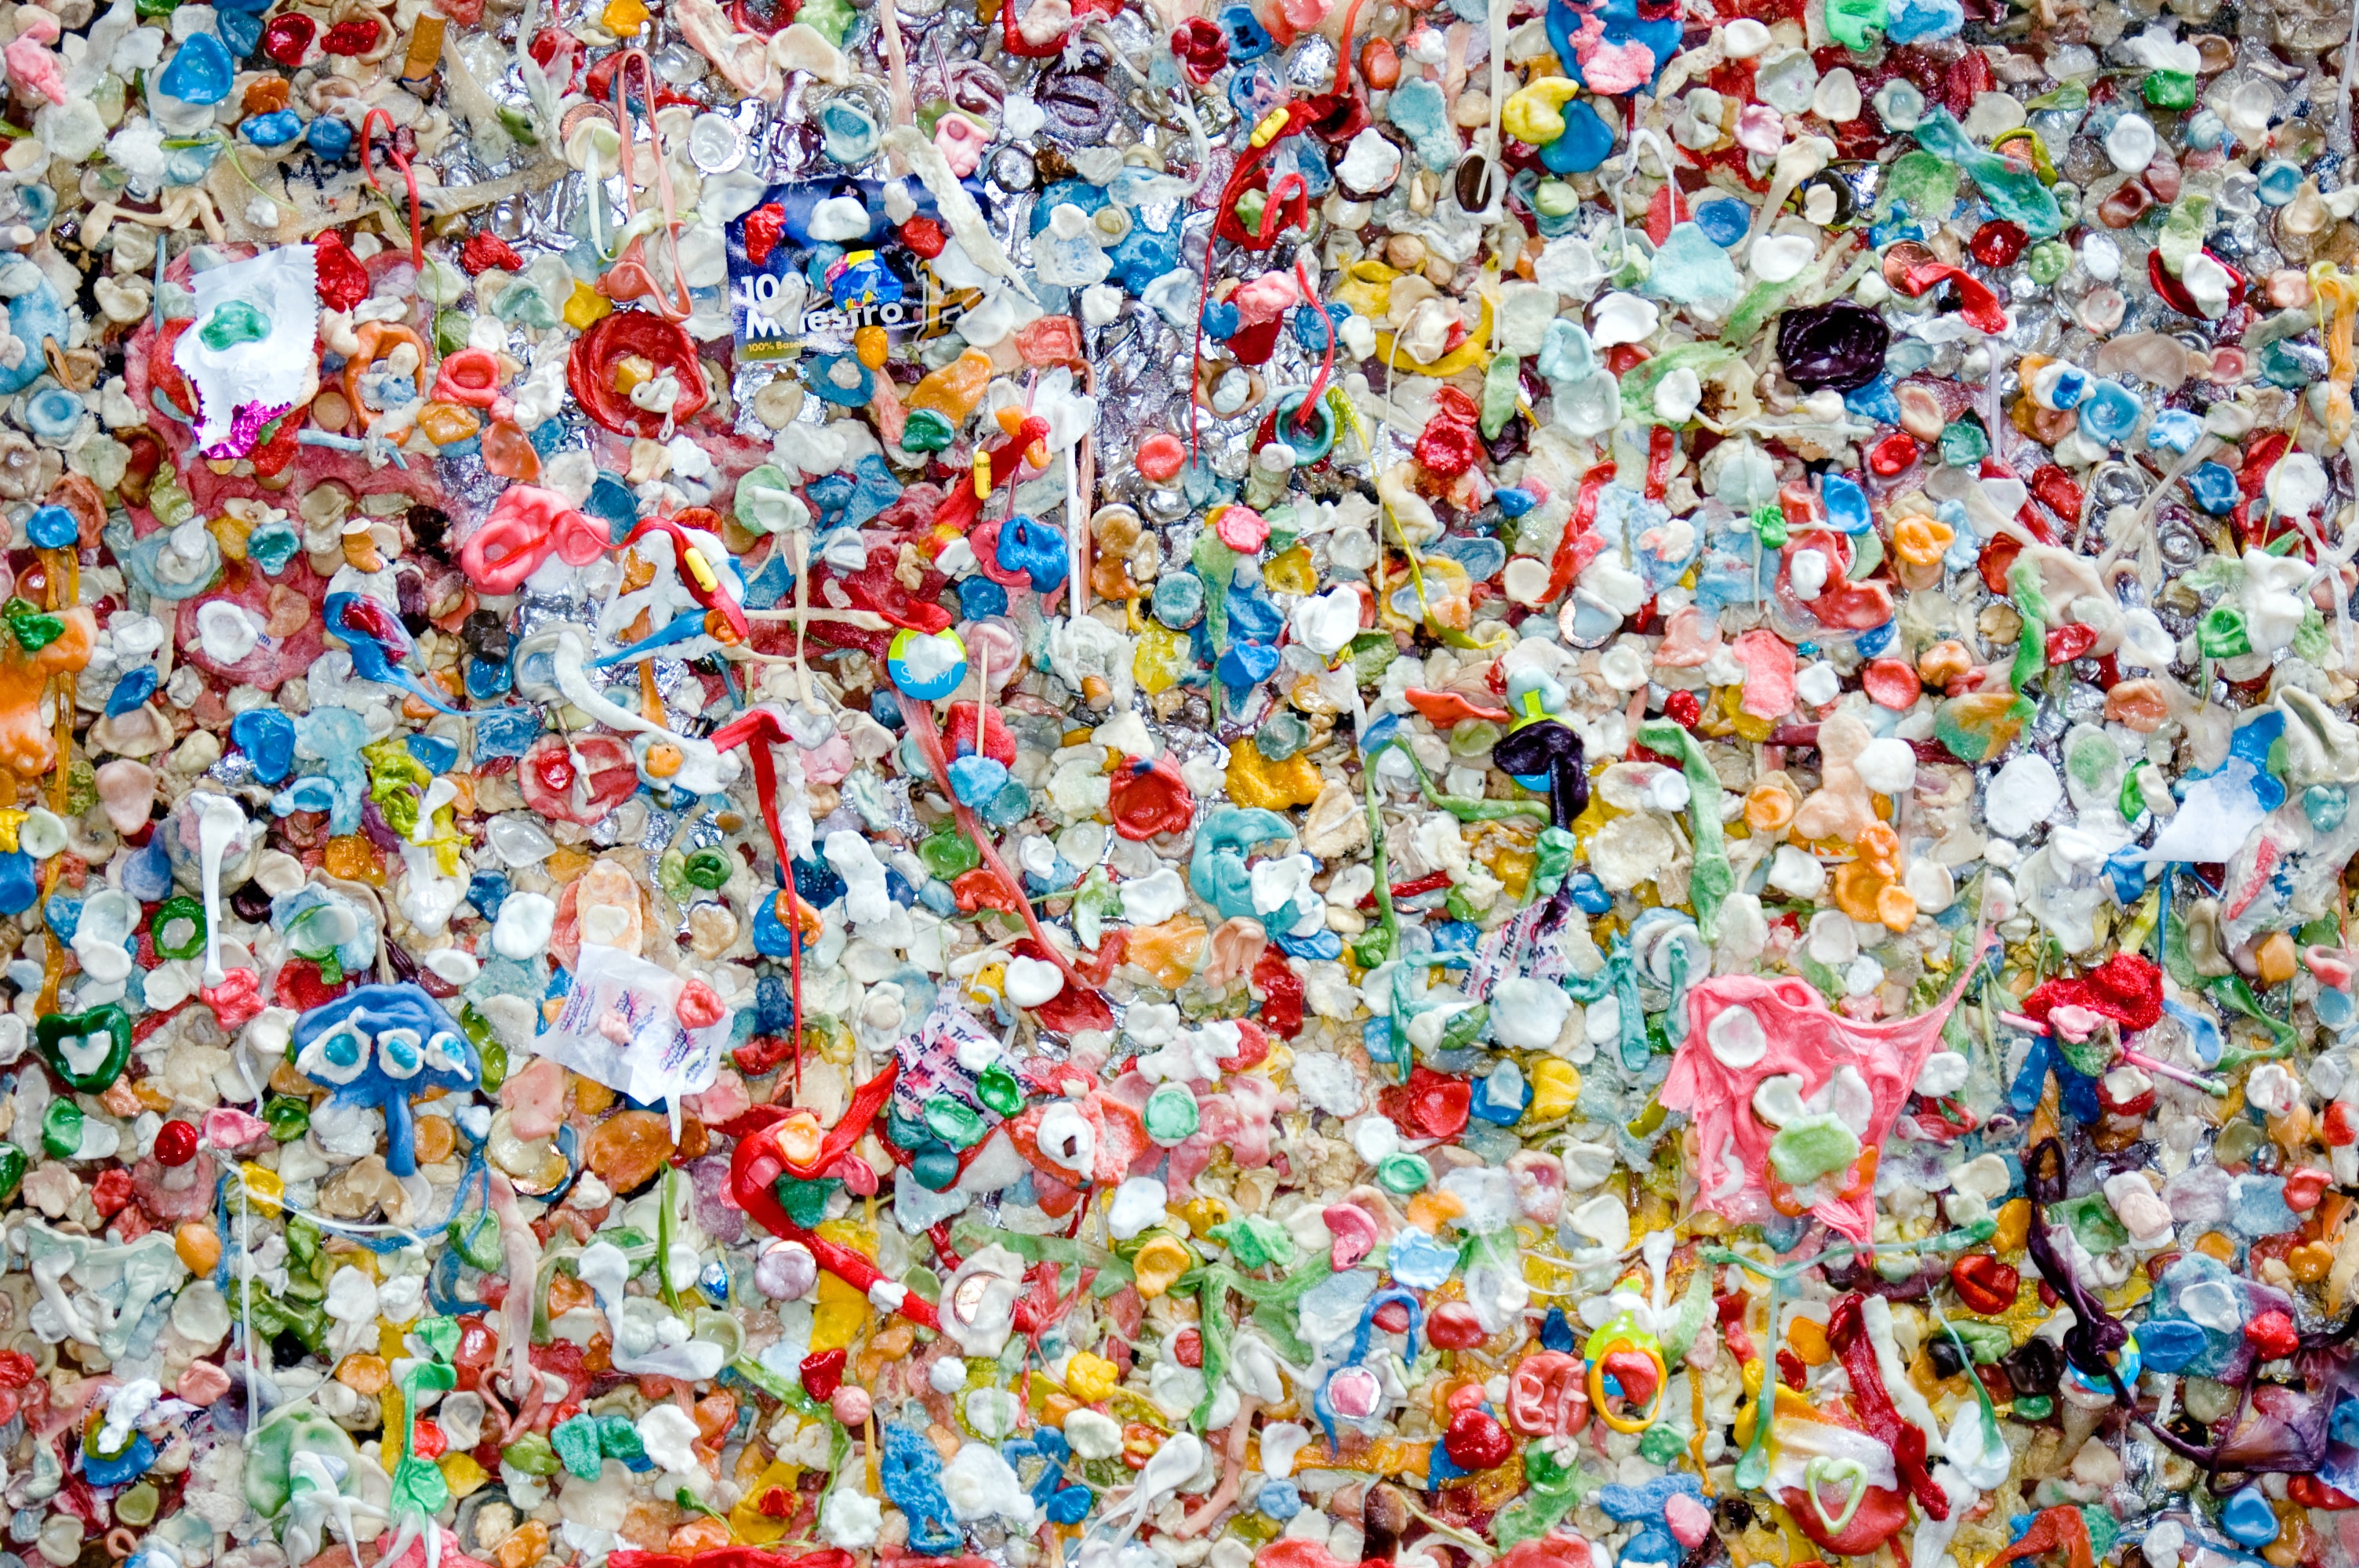 Sampah plastik yang menumpuk bisa menjadi musibah